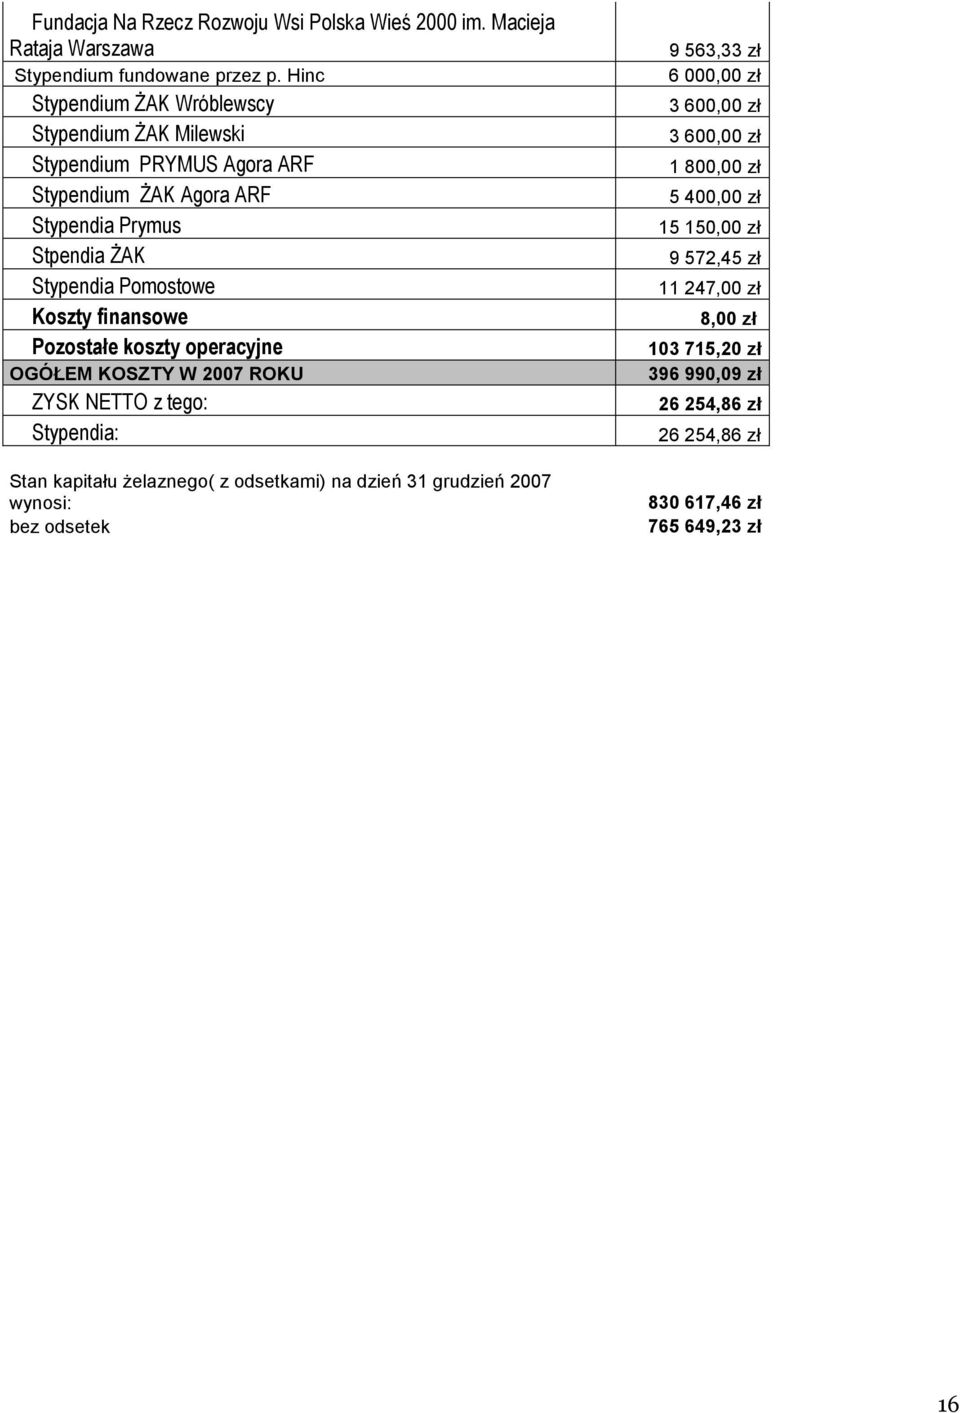 Koszty finansowe Pozostałe koszty operacyjne OGÓŁEM KOSZTY W 2007 ROKU ZYSK NETTO z tego: Stypendia: Stan kapitału żelaznego( z odsetkami) na dzień 31 grudzień